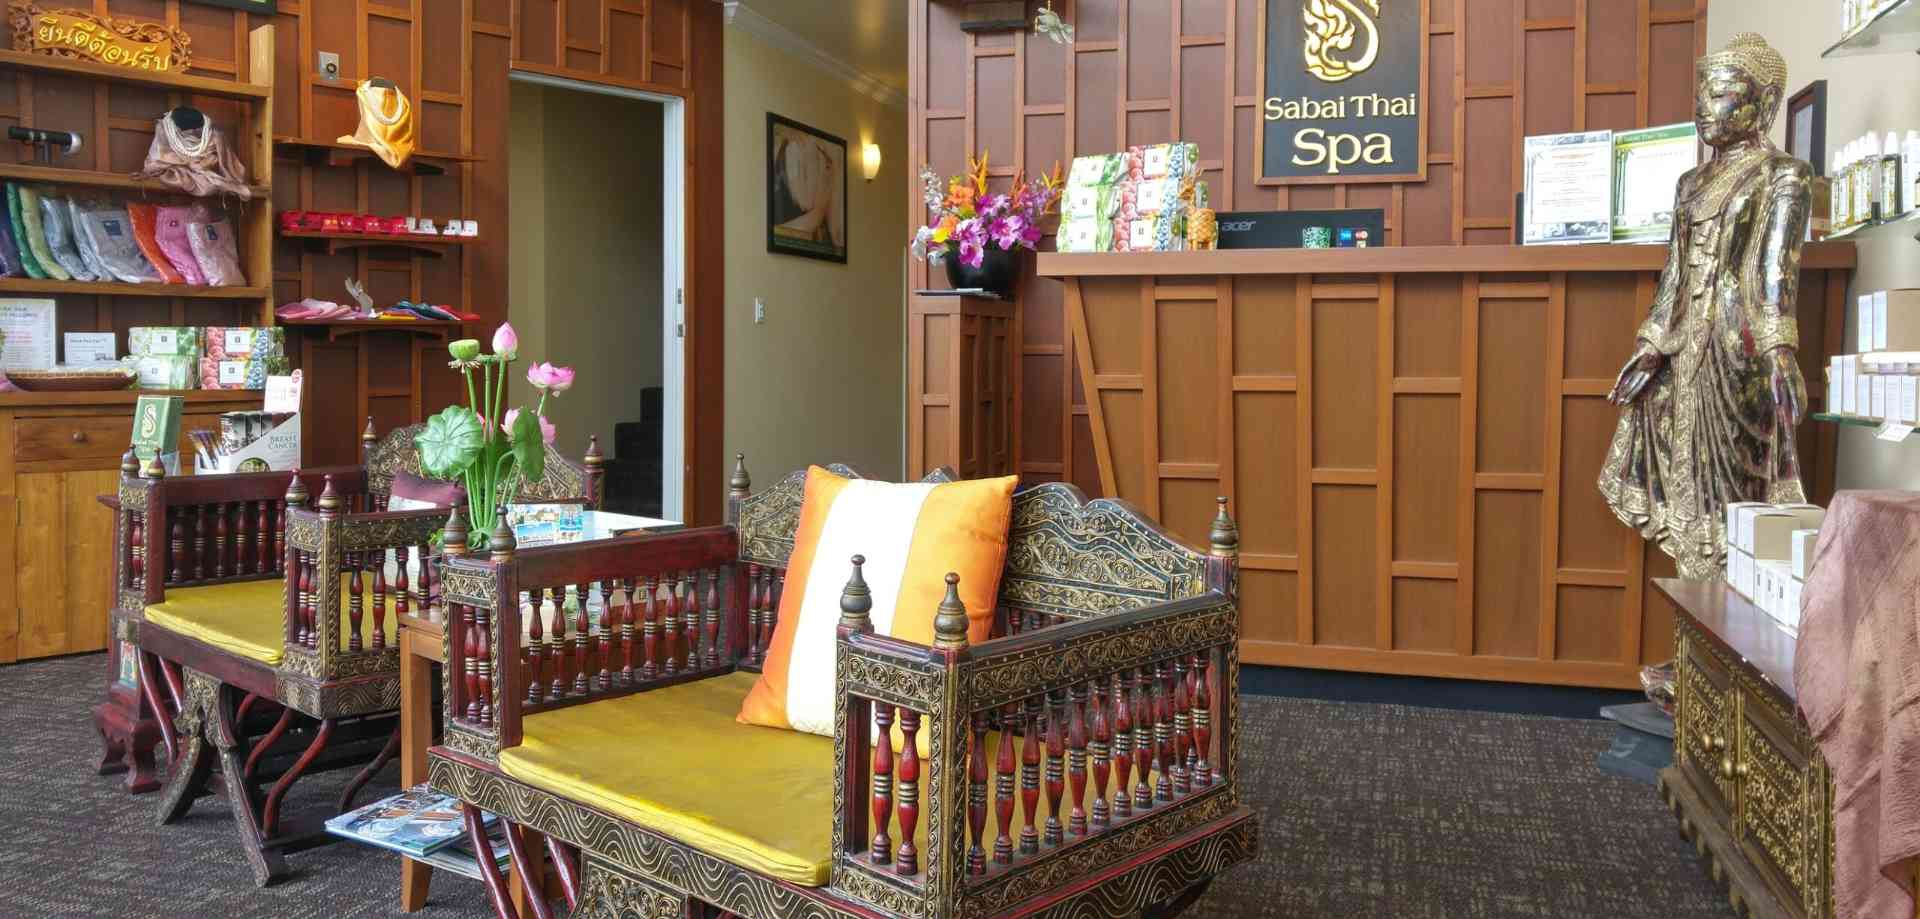 Sabai Thai Spa in North Vancouver